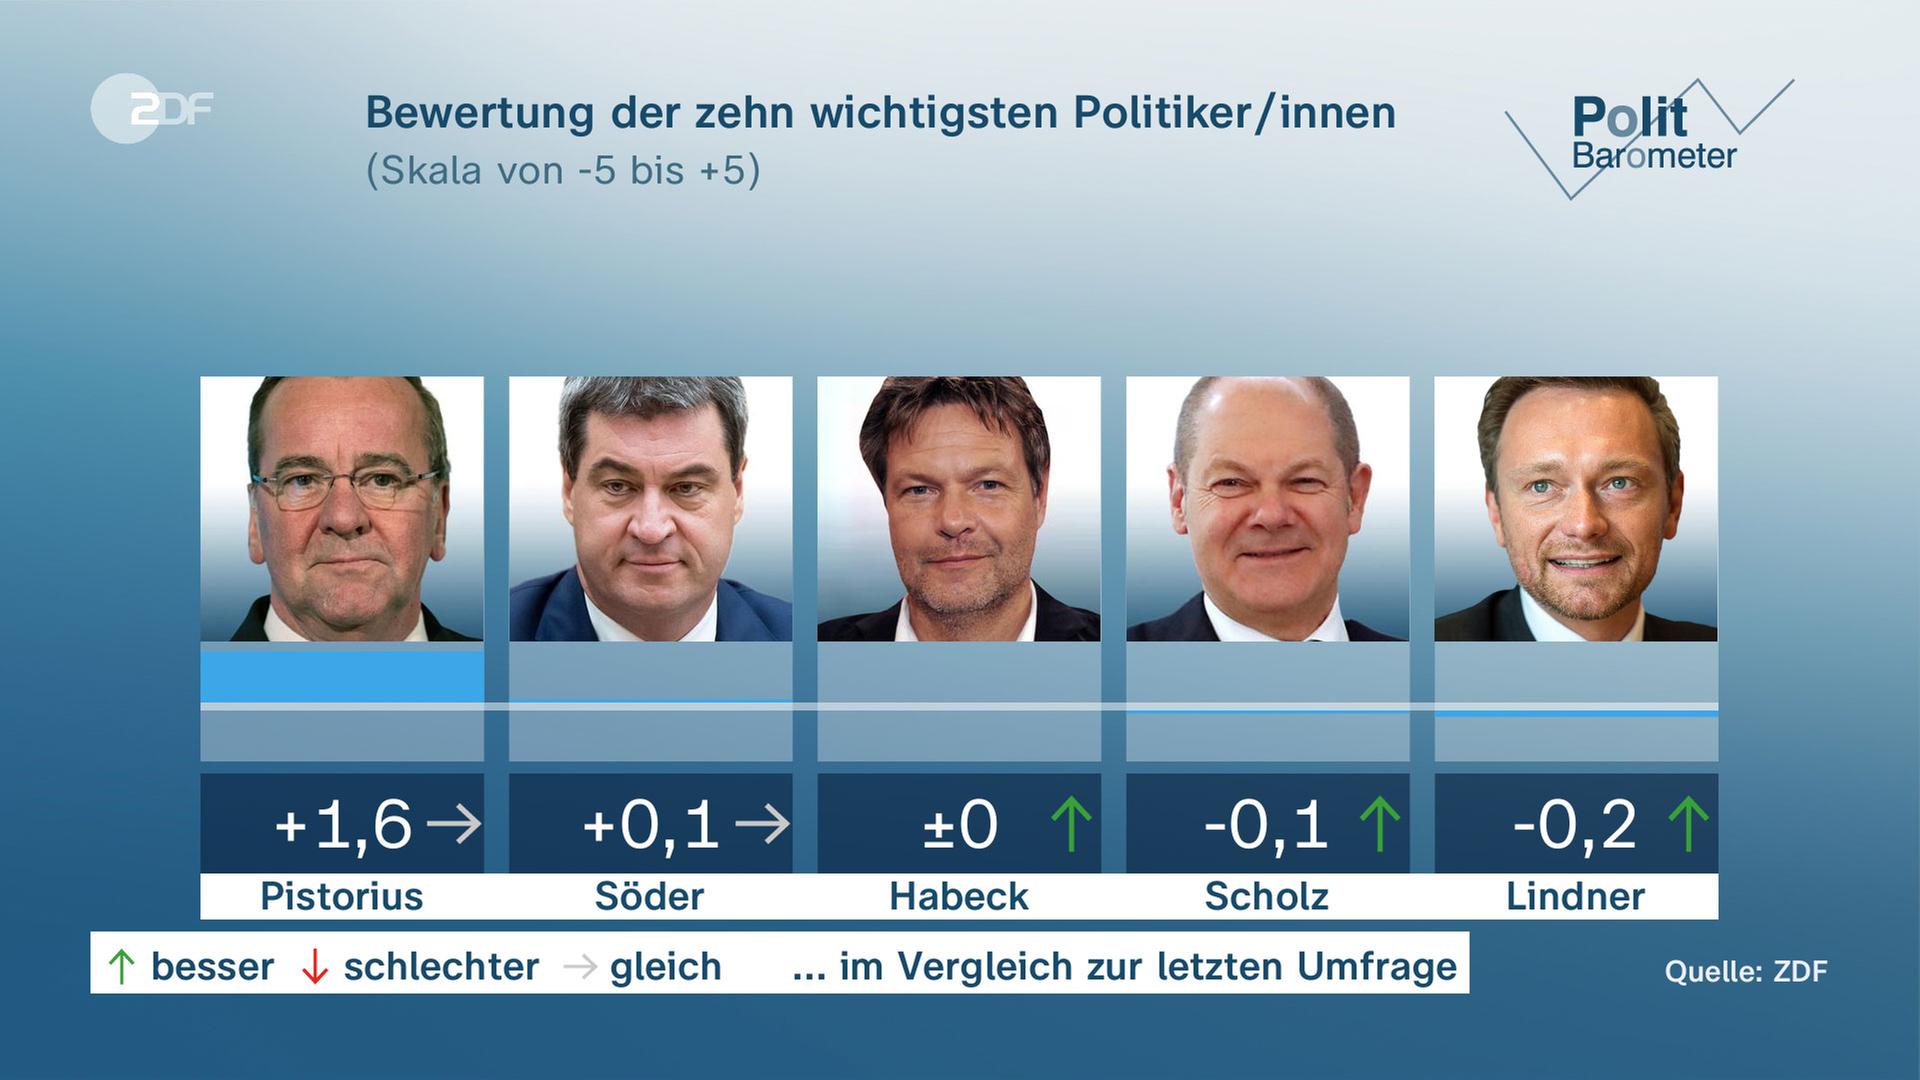 Politbarometer: Bewertung der 10 wichtigsten Politiker*innen